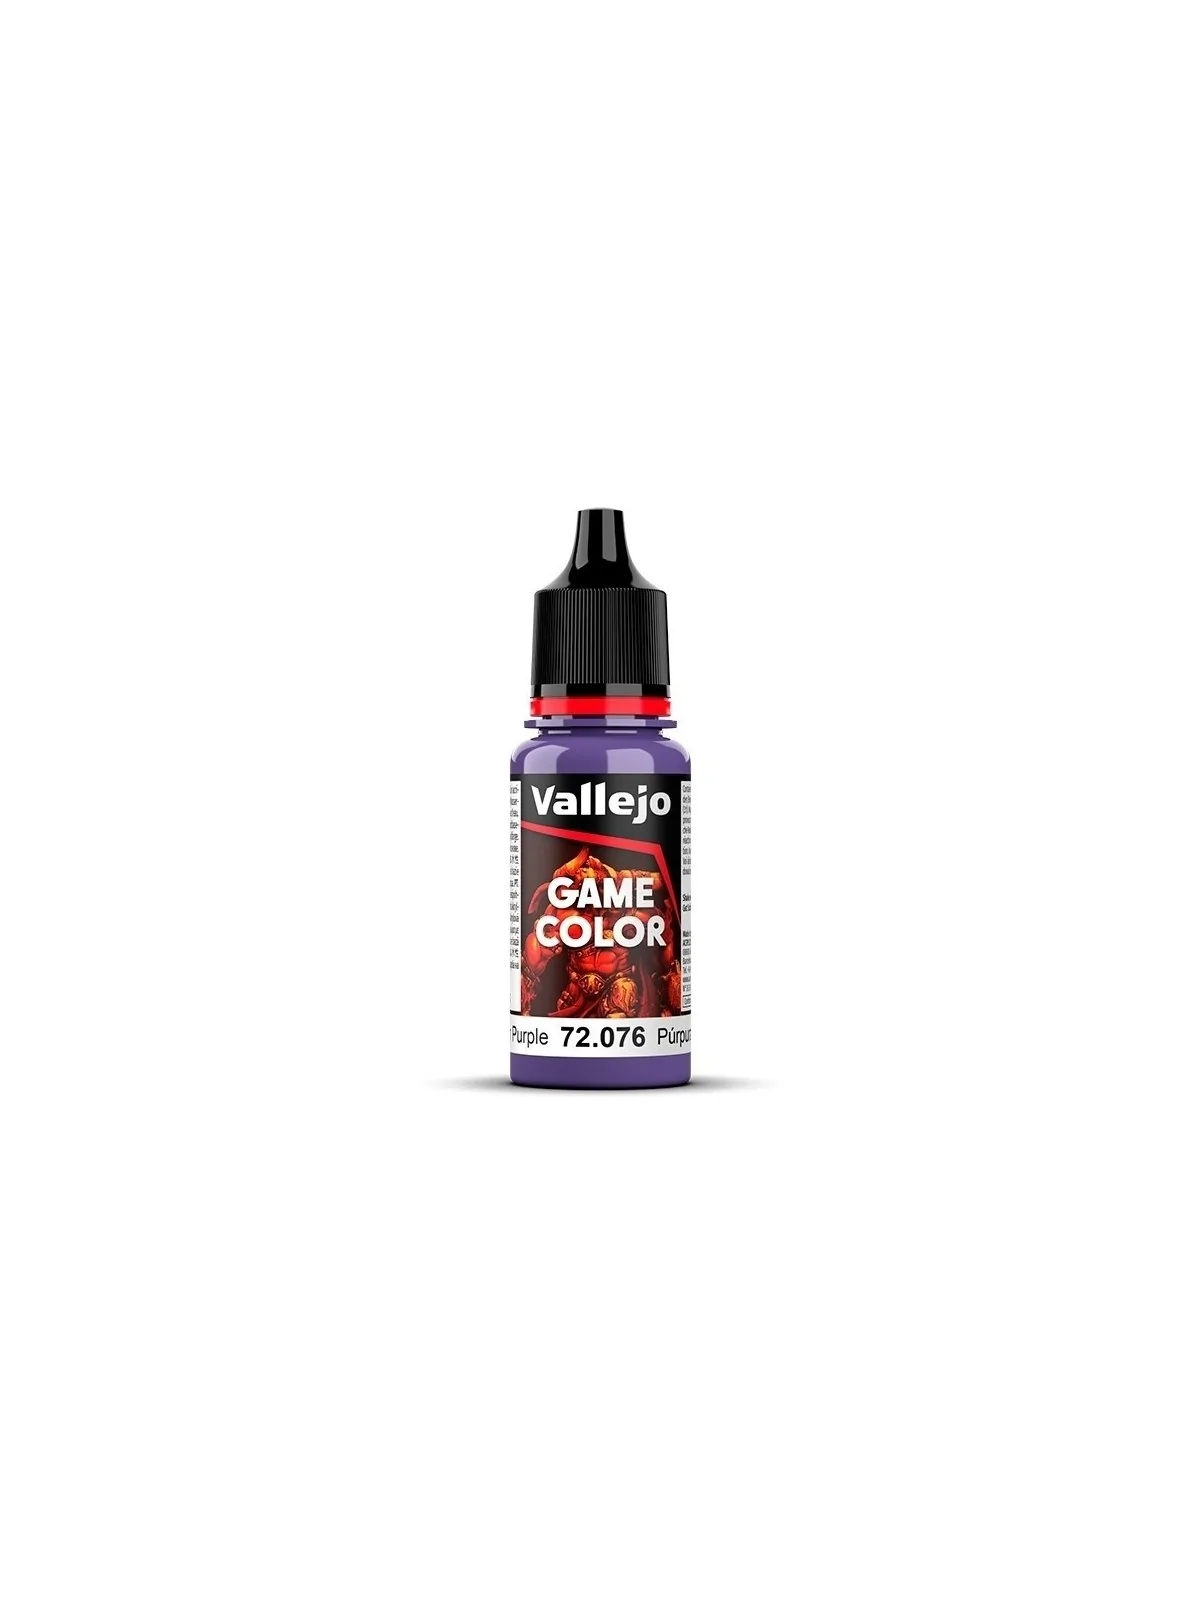 Comprar Púrpura Alienígena Game Color Vallejo 18 ml (72076) barato al 